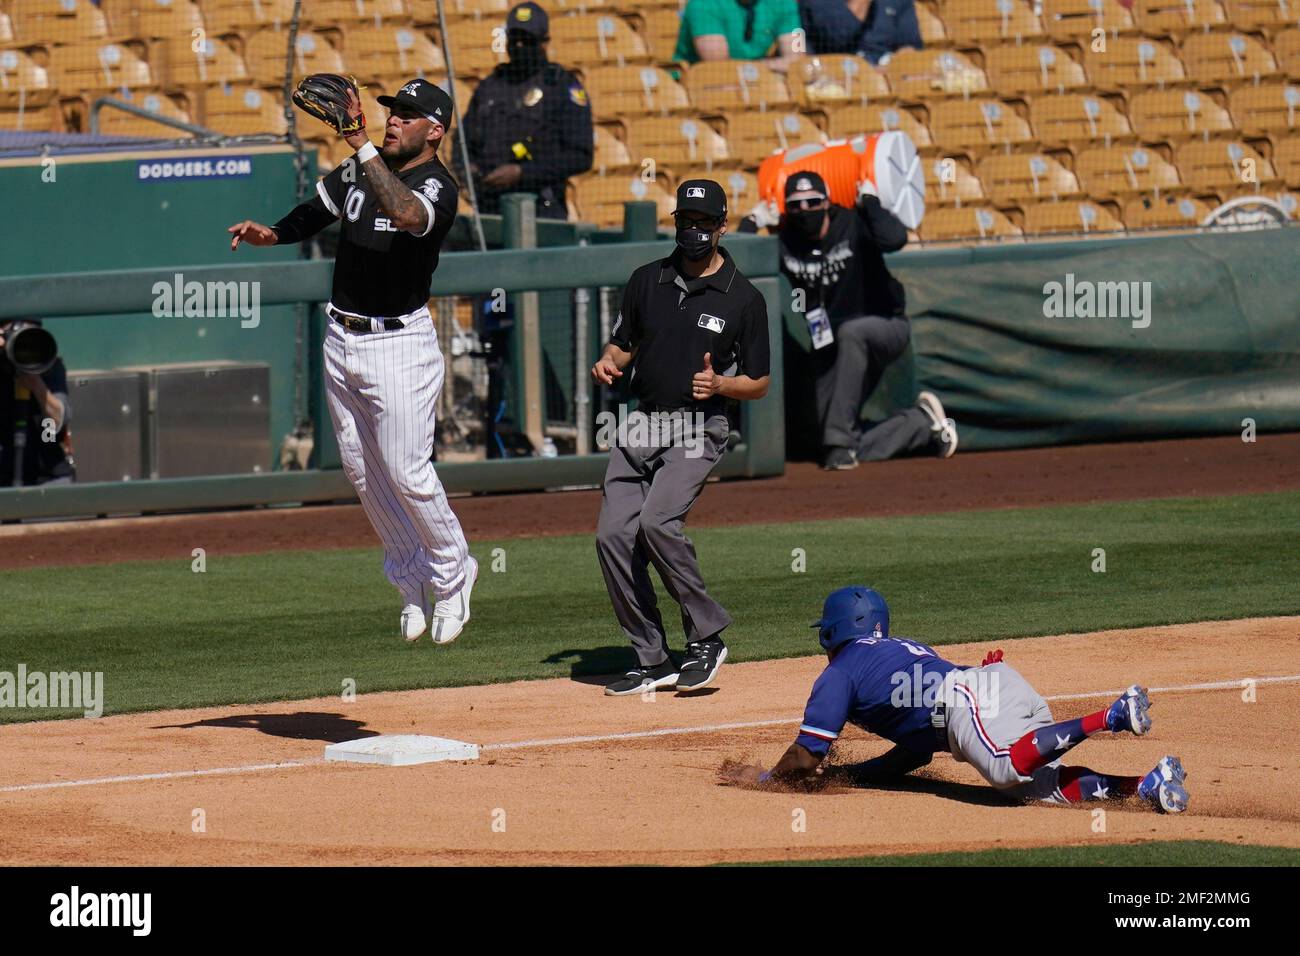 What a catch! White Sox third baseman Yoan Moncada hangs onto a